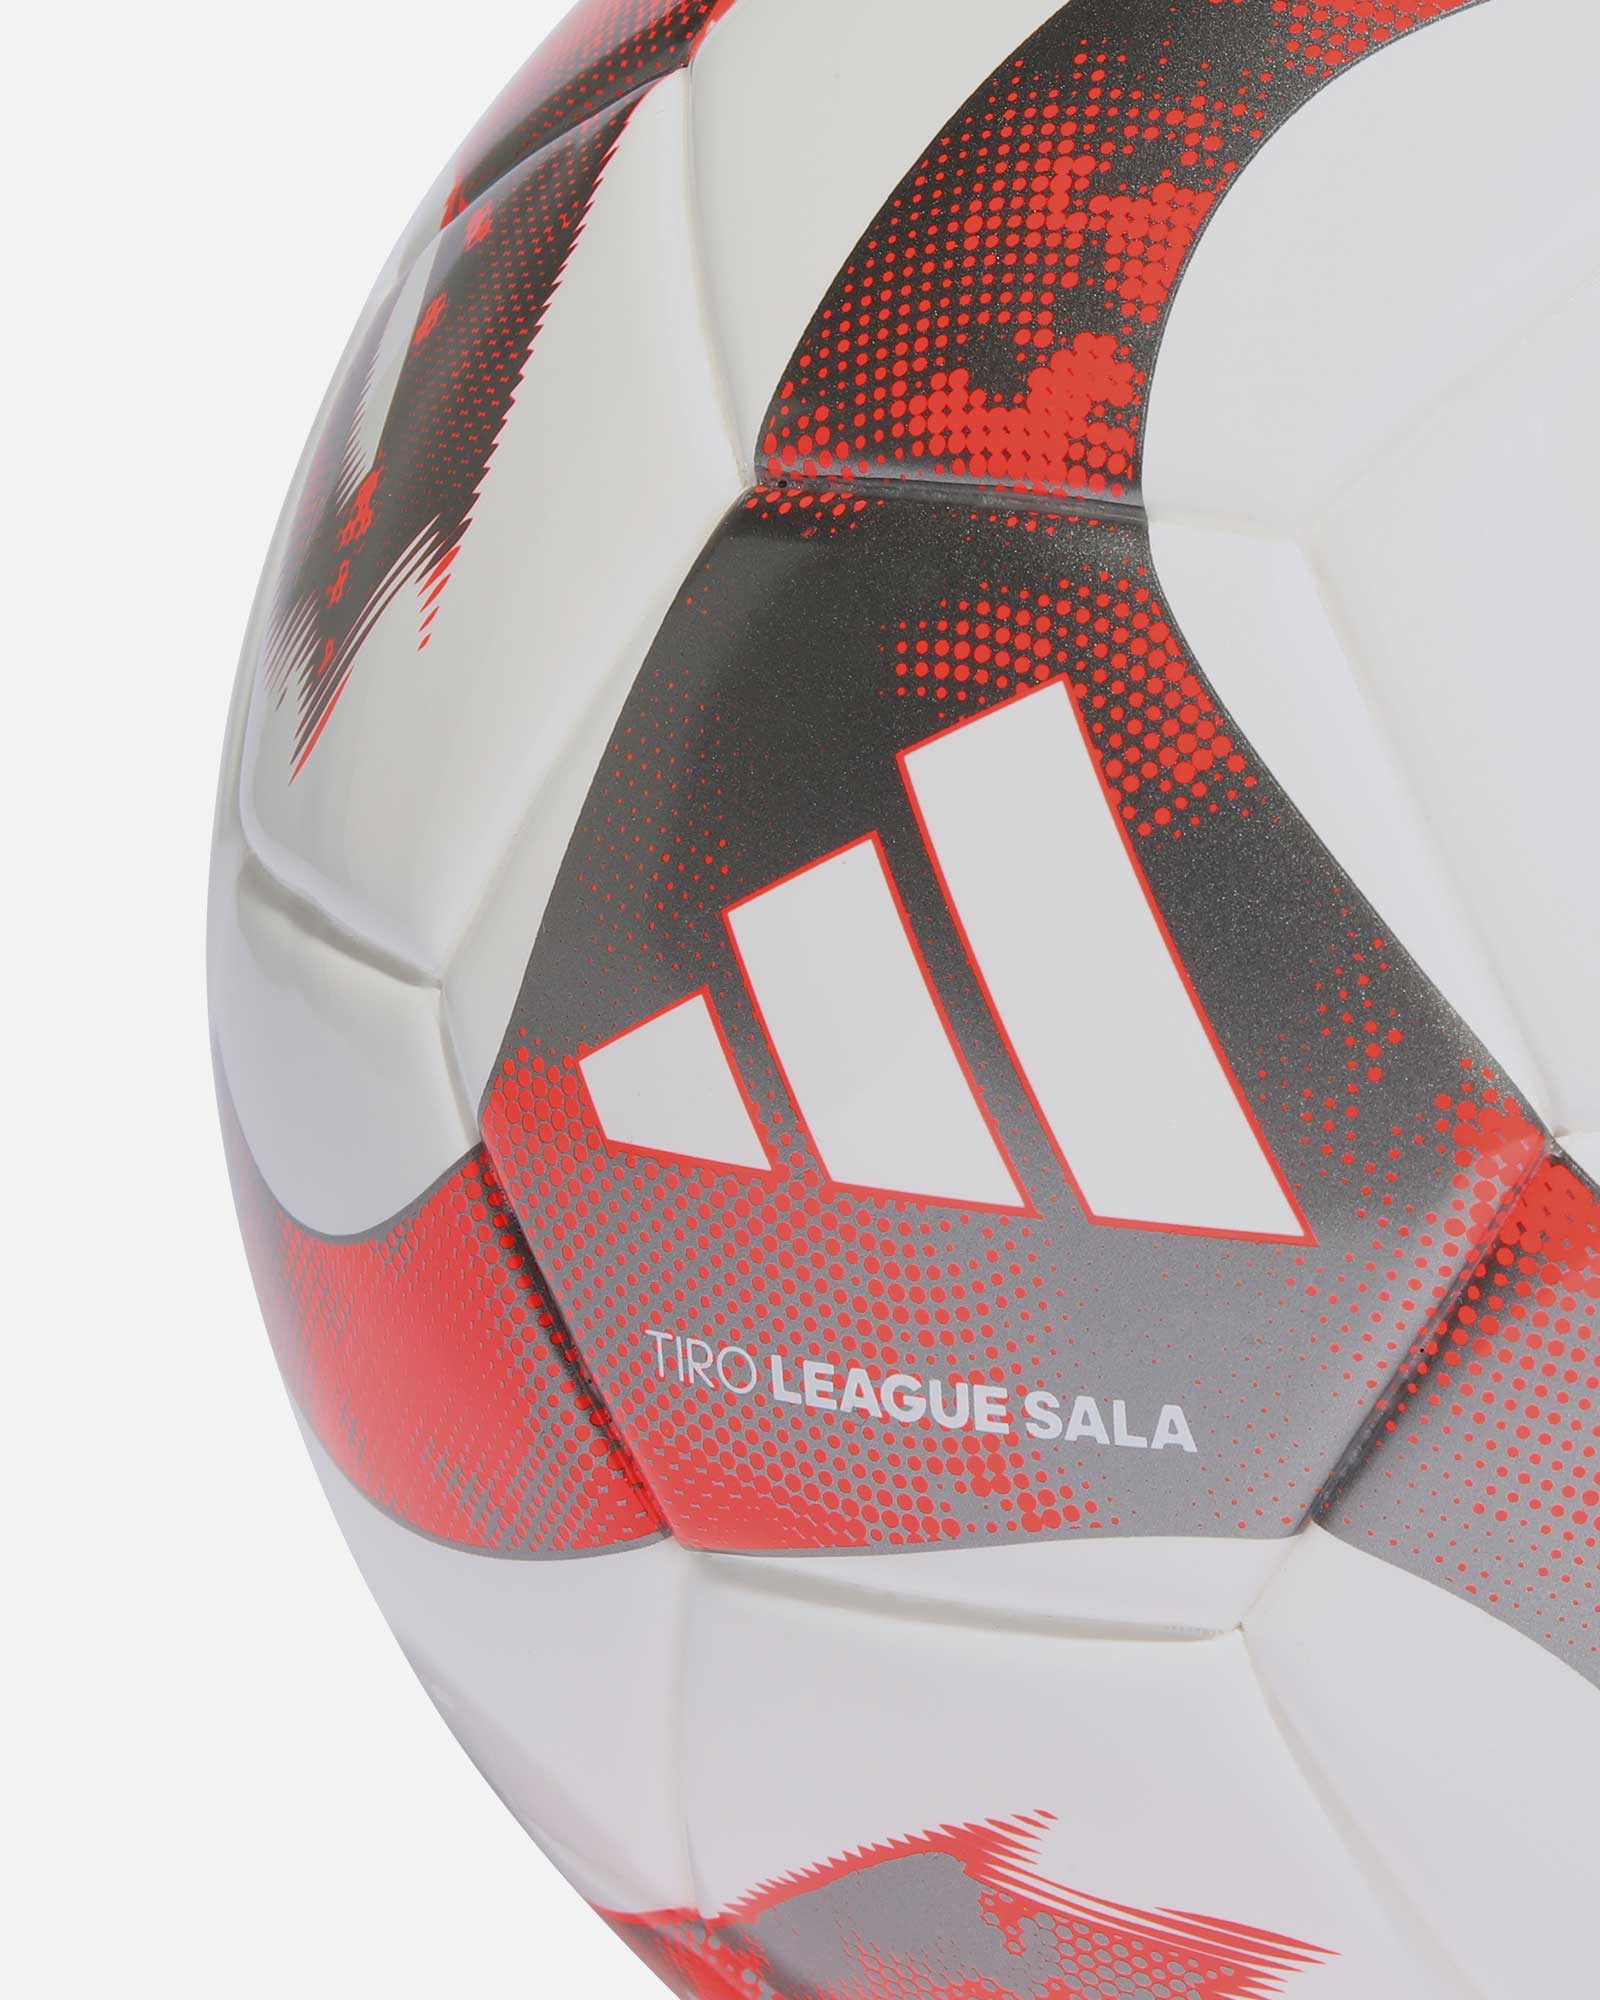 Balón adidas Tiro League Sala  - Fútbol Factory